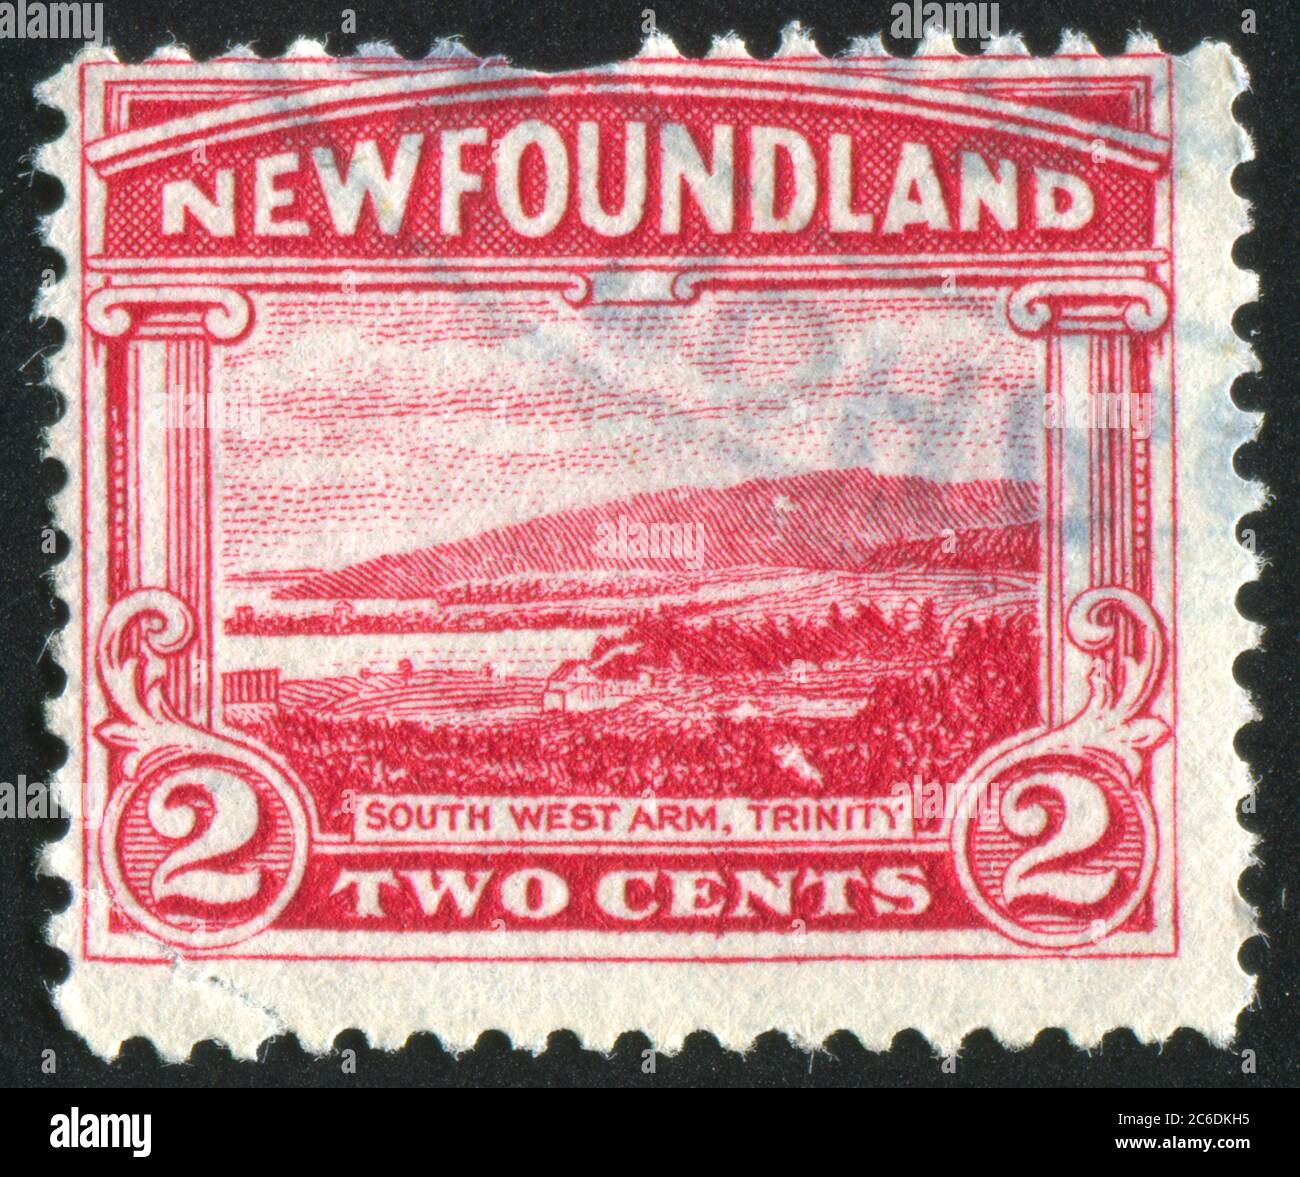 NEWFAUNDLAND - VERS 1923 : timbre imprimé par Terre-Neuve, montre South West Arm, Trinity, vers 1923 Banque D'Images